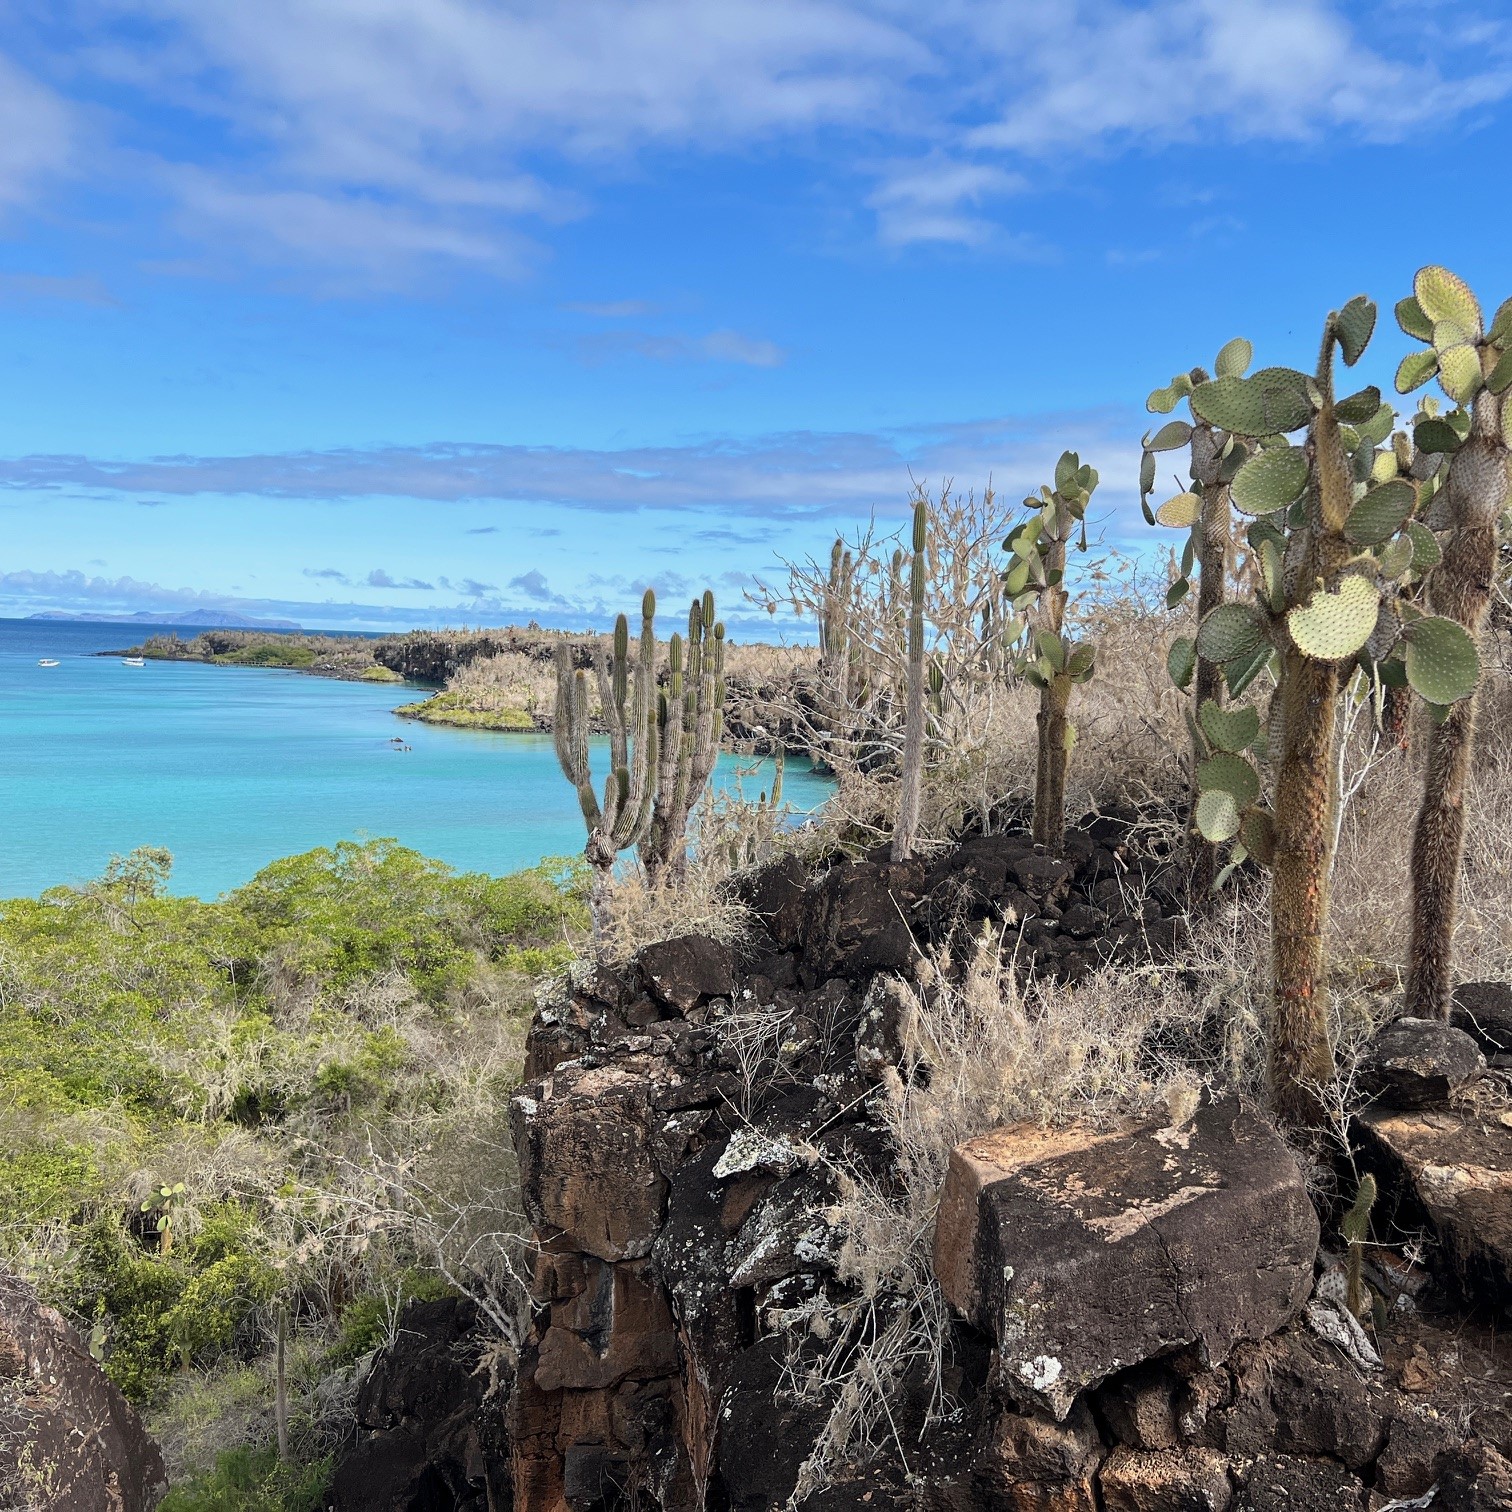 ガラパゴス諸島サンタクルス島の海辺の風景。巨大な木のようなサボテンがたくさん